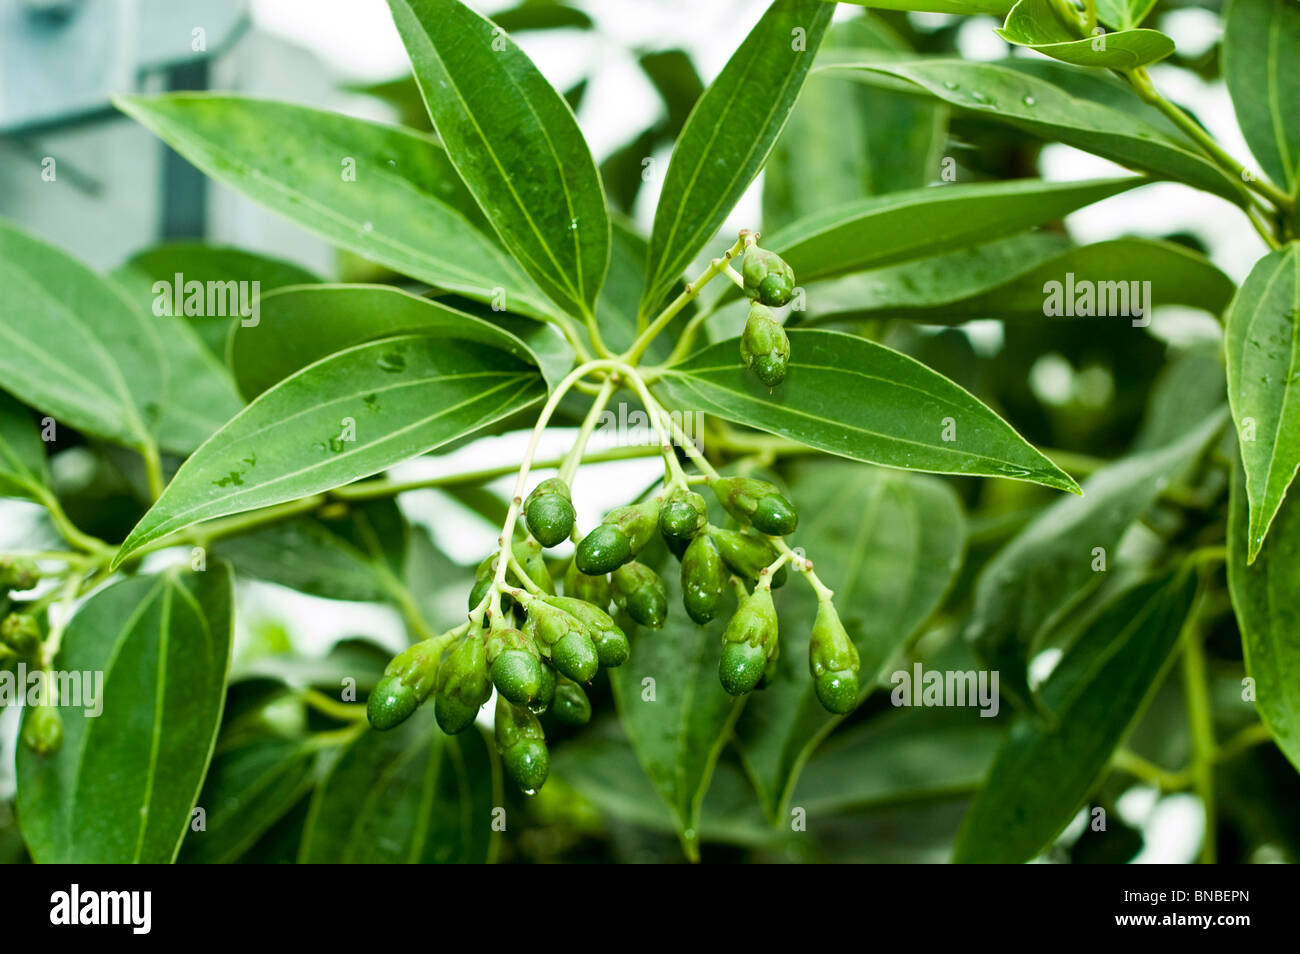 Cinnamomum myrianthum, Cinnamomum kotoense, lauraceae, canela, innamon, cinnamon, plant, leaves Stock Photo